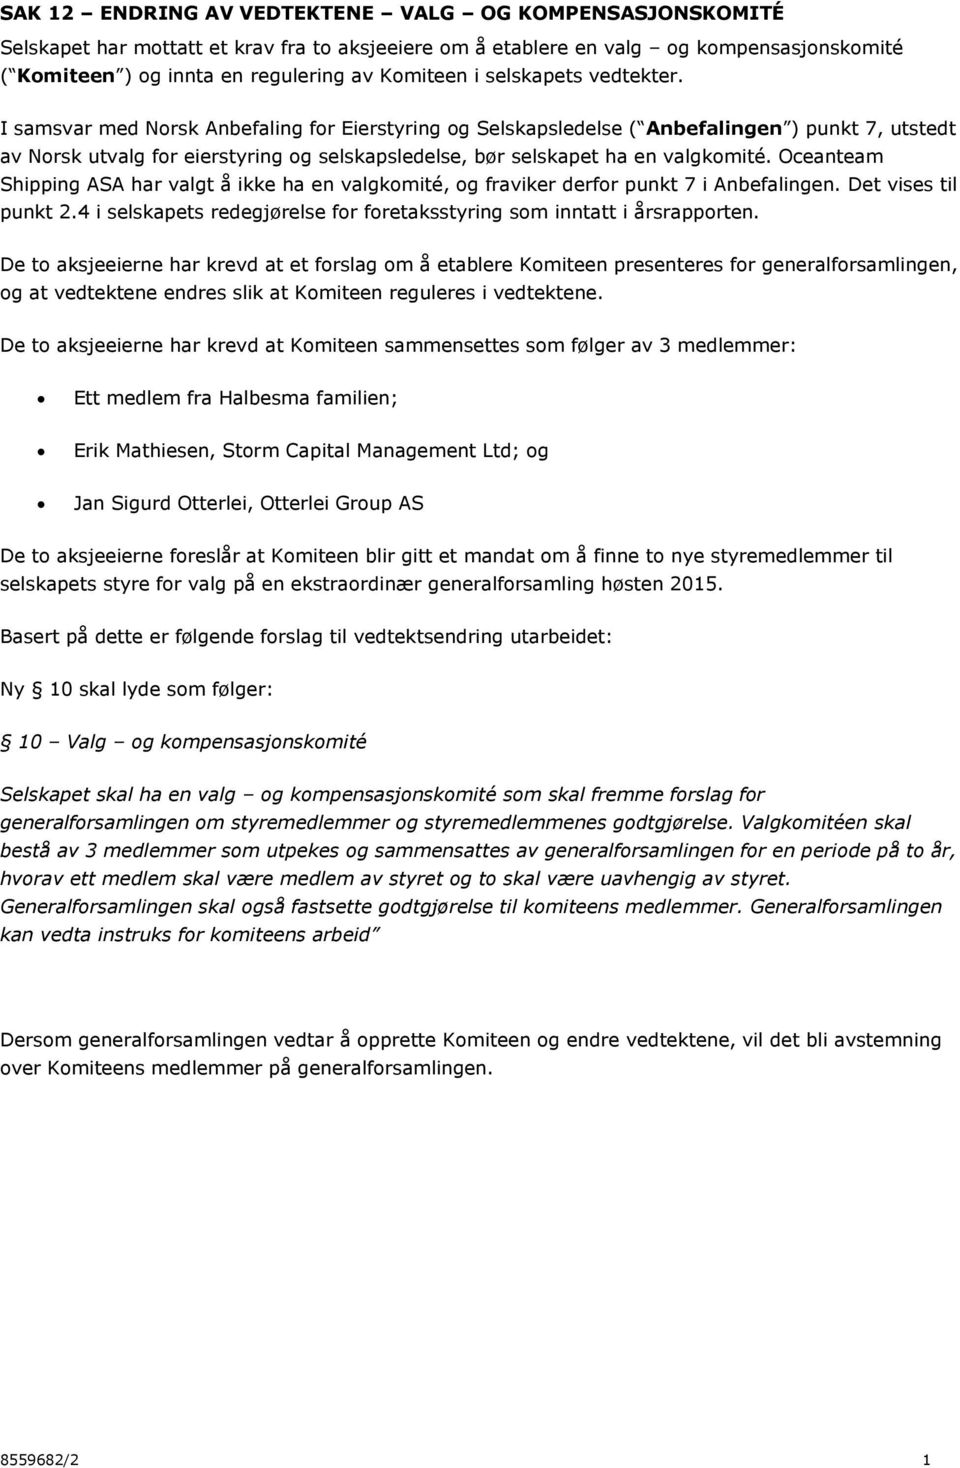 I samsvar med Norsk Anbefaling for Eierstyring og Selskapsledelse ( Anbefalingen ) punkt 7, utstedt av Norsk utvalg for eierstyring og selskapsledelse, bør selskapet ha en valgkomité.